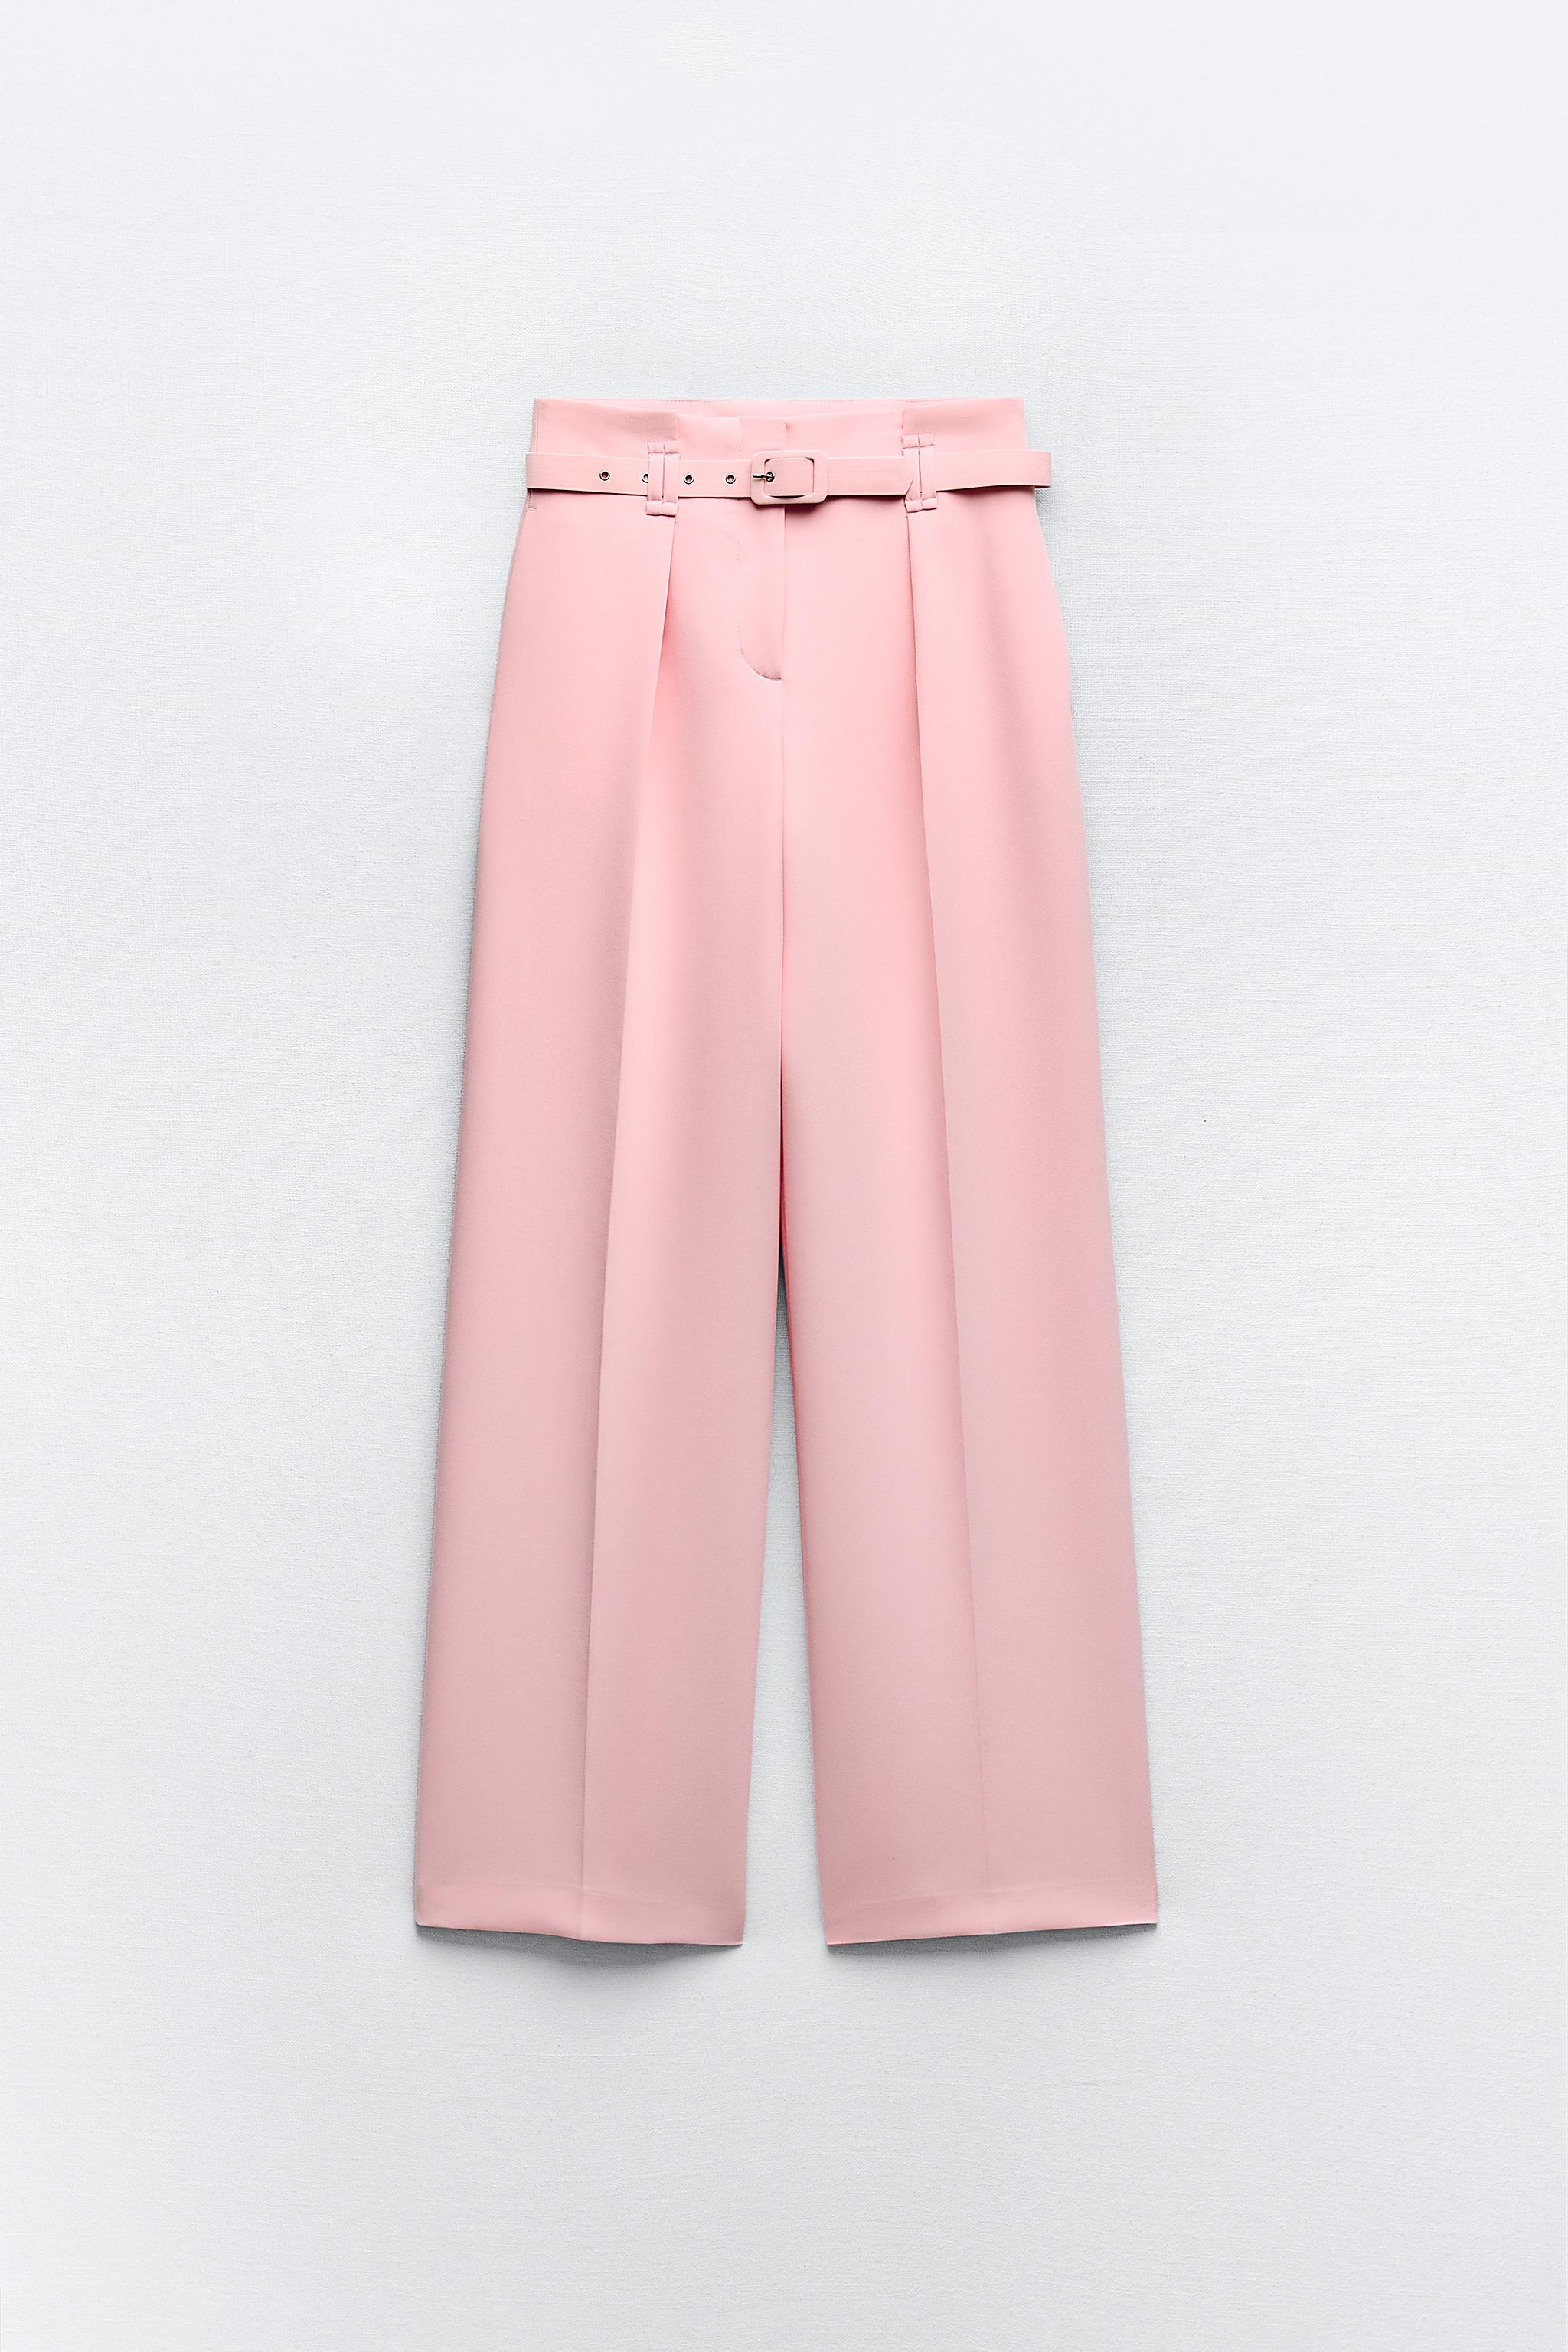 Zara high waist bubble gum pink pants